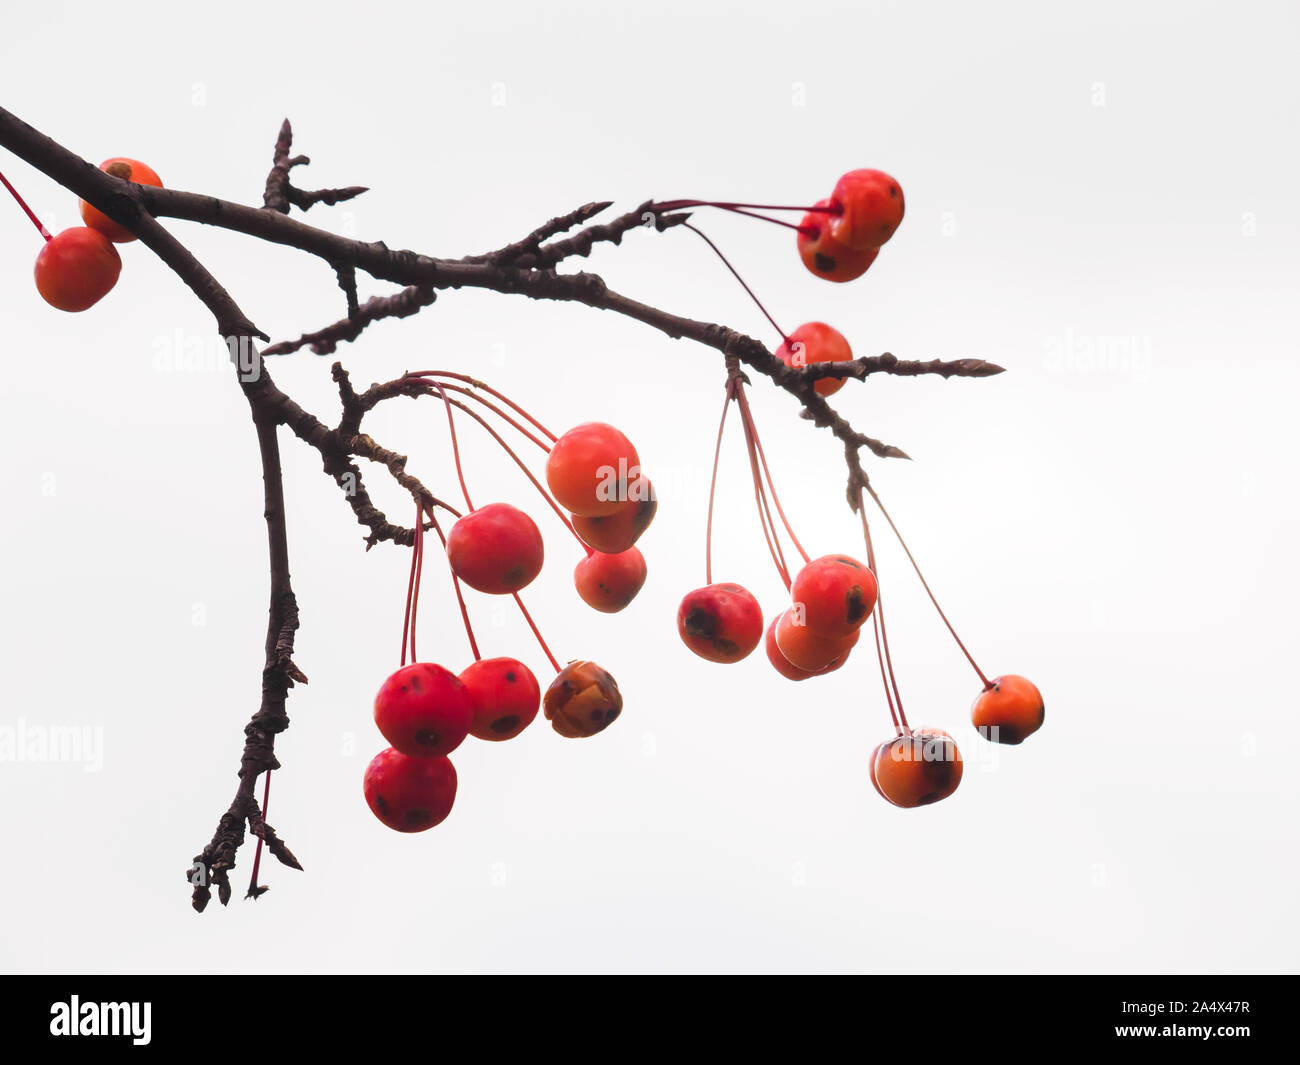 Petits fruits rouges de crabe chinois apple avec imperfections, la pendaison des branches contre le ciel blanc. Banque D'Images